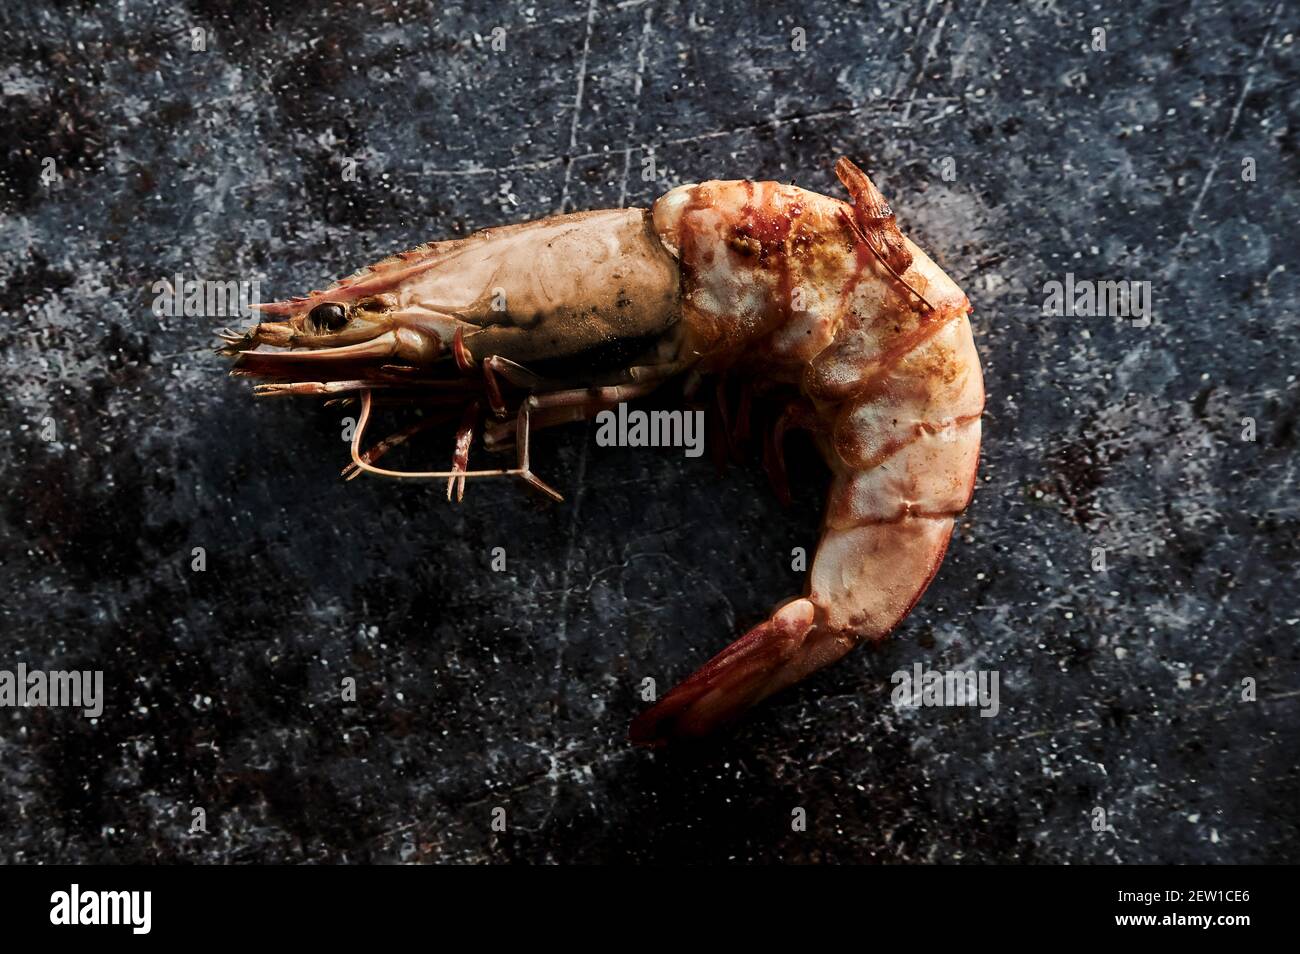 Von oben appetitliche Meeresfrüchte von Garnelen mit Schale und Beine auf gepunkteter Oberfläche Stockfoto